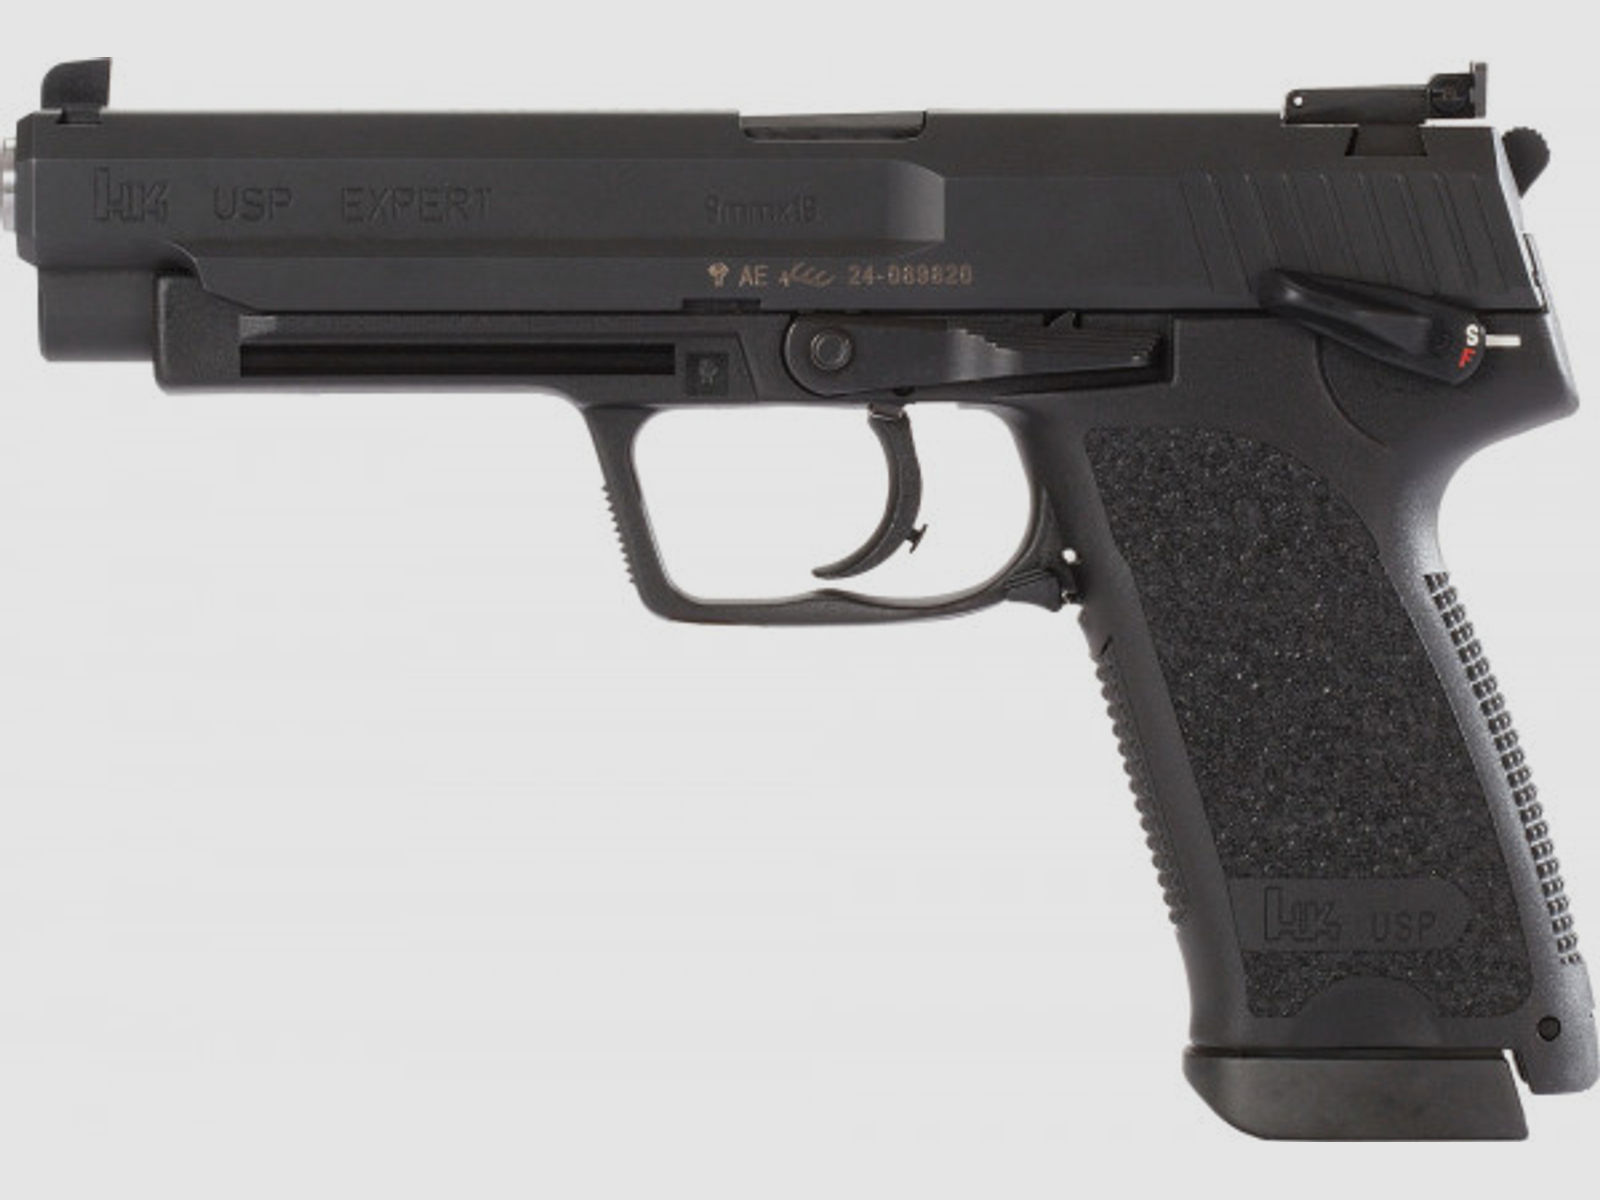 Heckler & Koch HK USP Expert 9 mm Pistole #205051